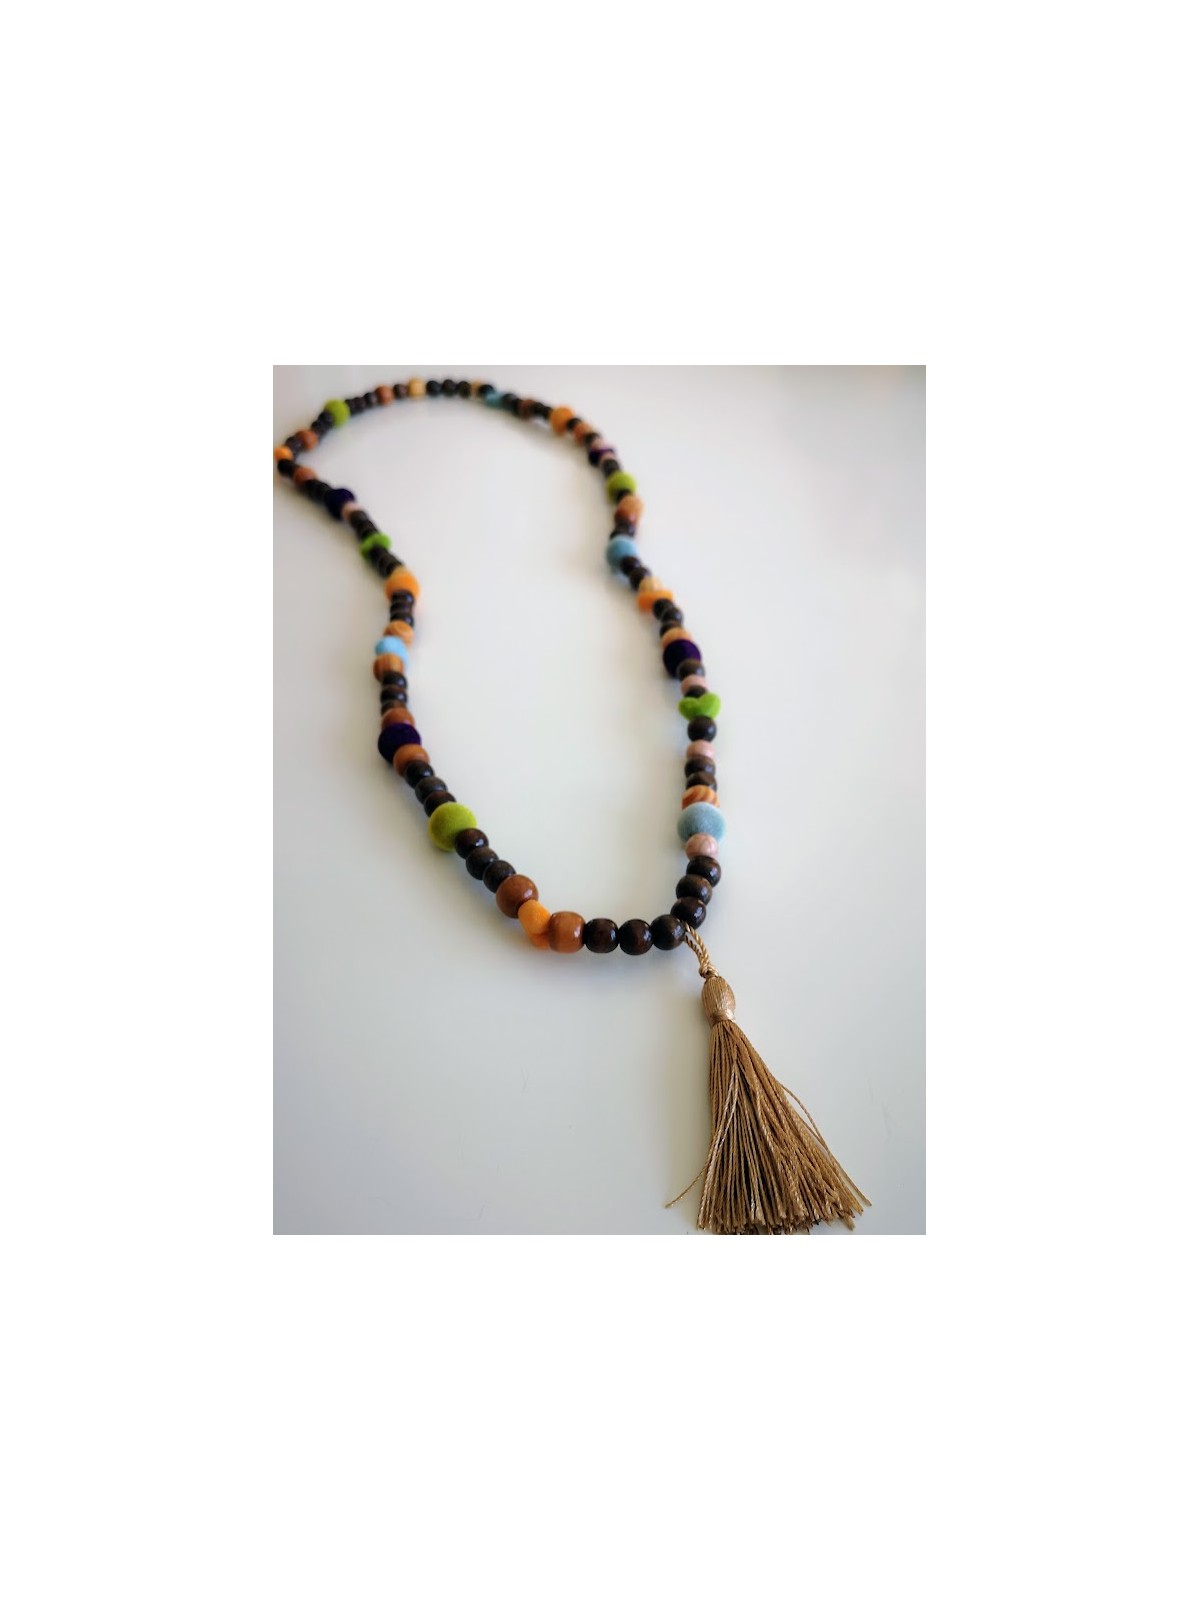 Sautoir perles bois et feutrine colorée avec pompon l 2 vue pompon l Tilleulmenthe mode boutique de vêtements femme en ligne